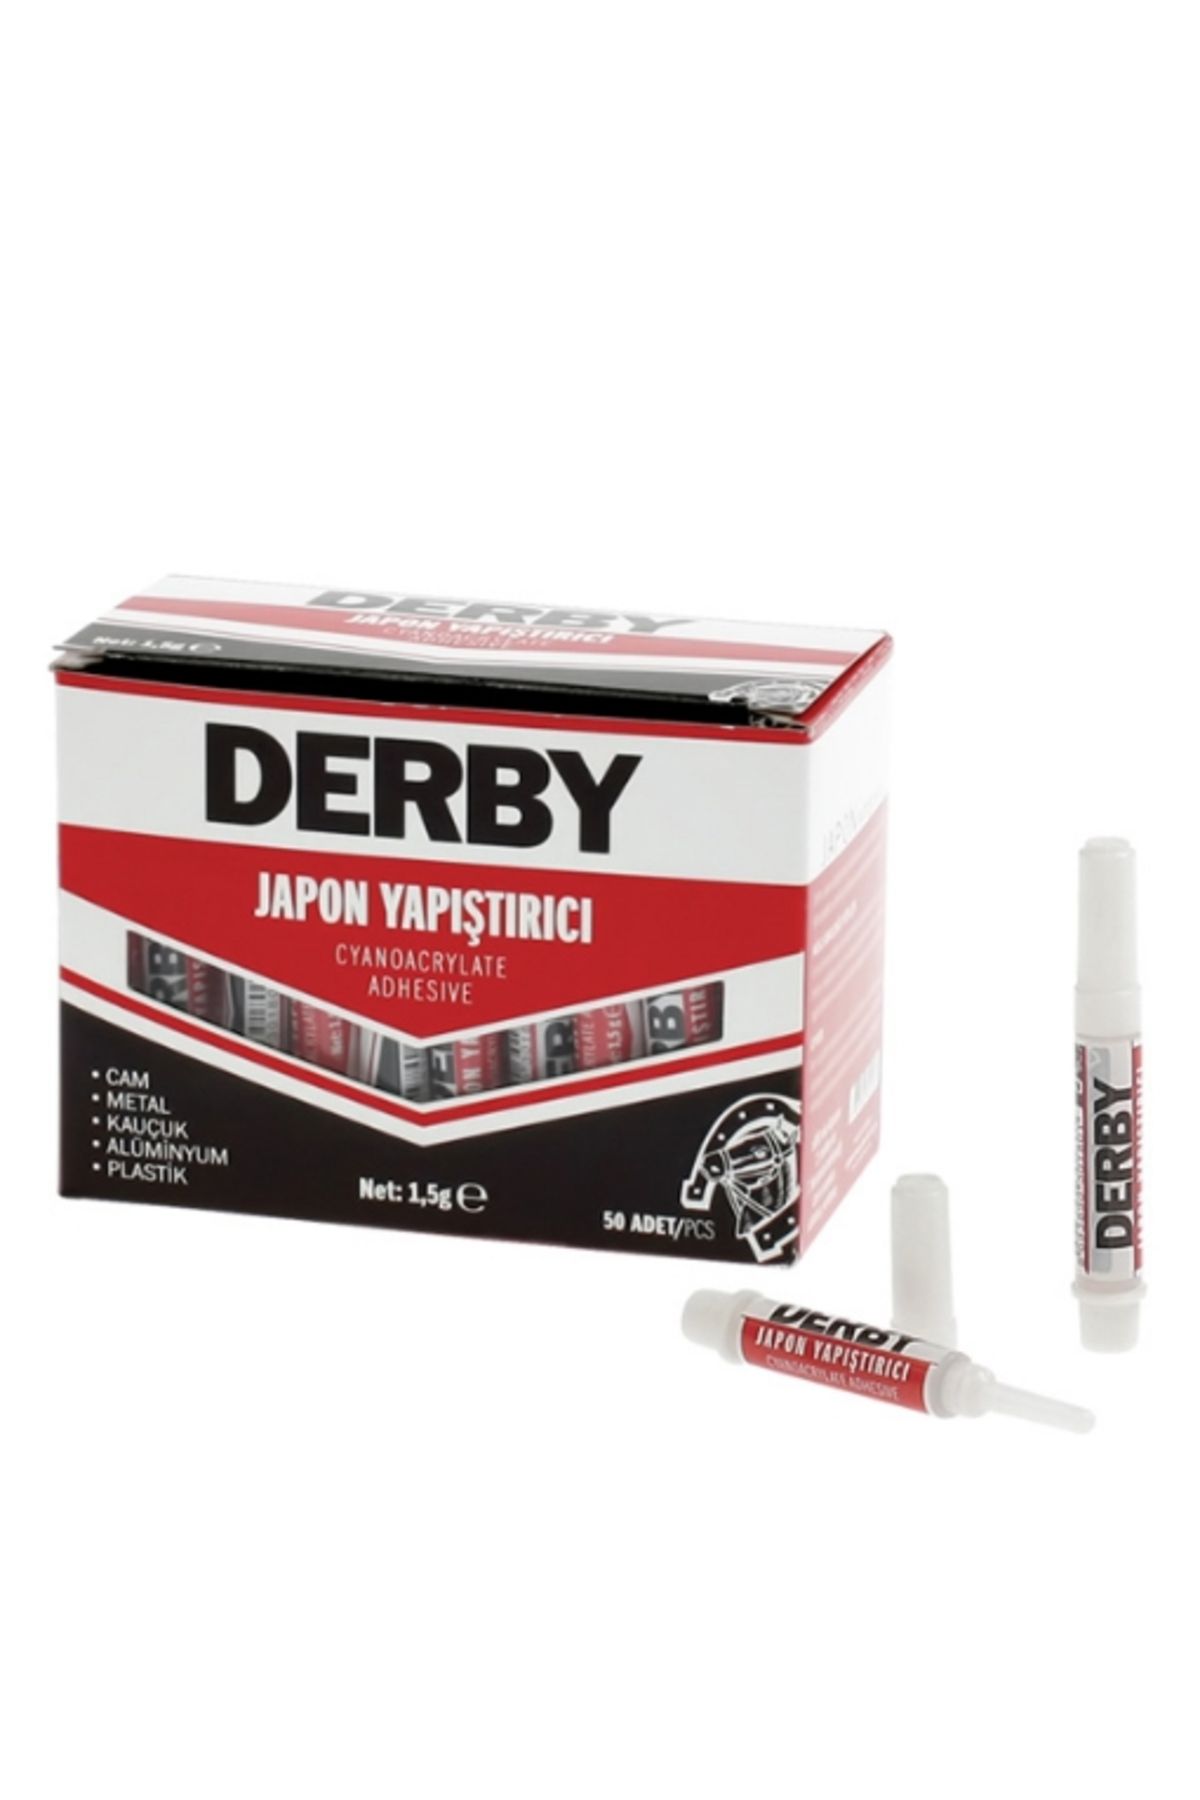 Derby Japon Yapıstırıcı 1.5Gr (2'li)